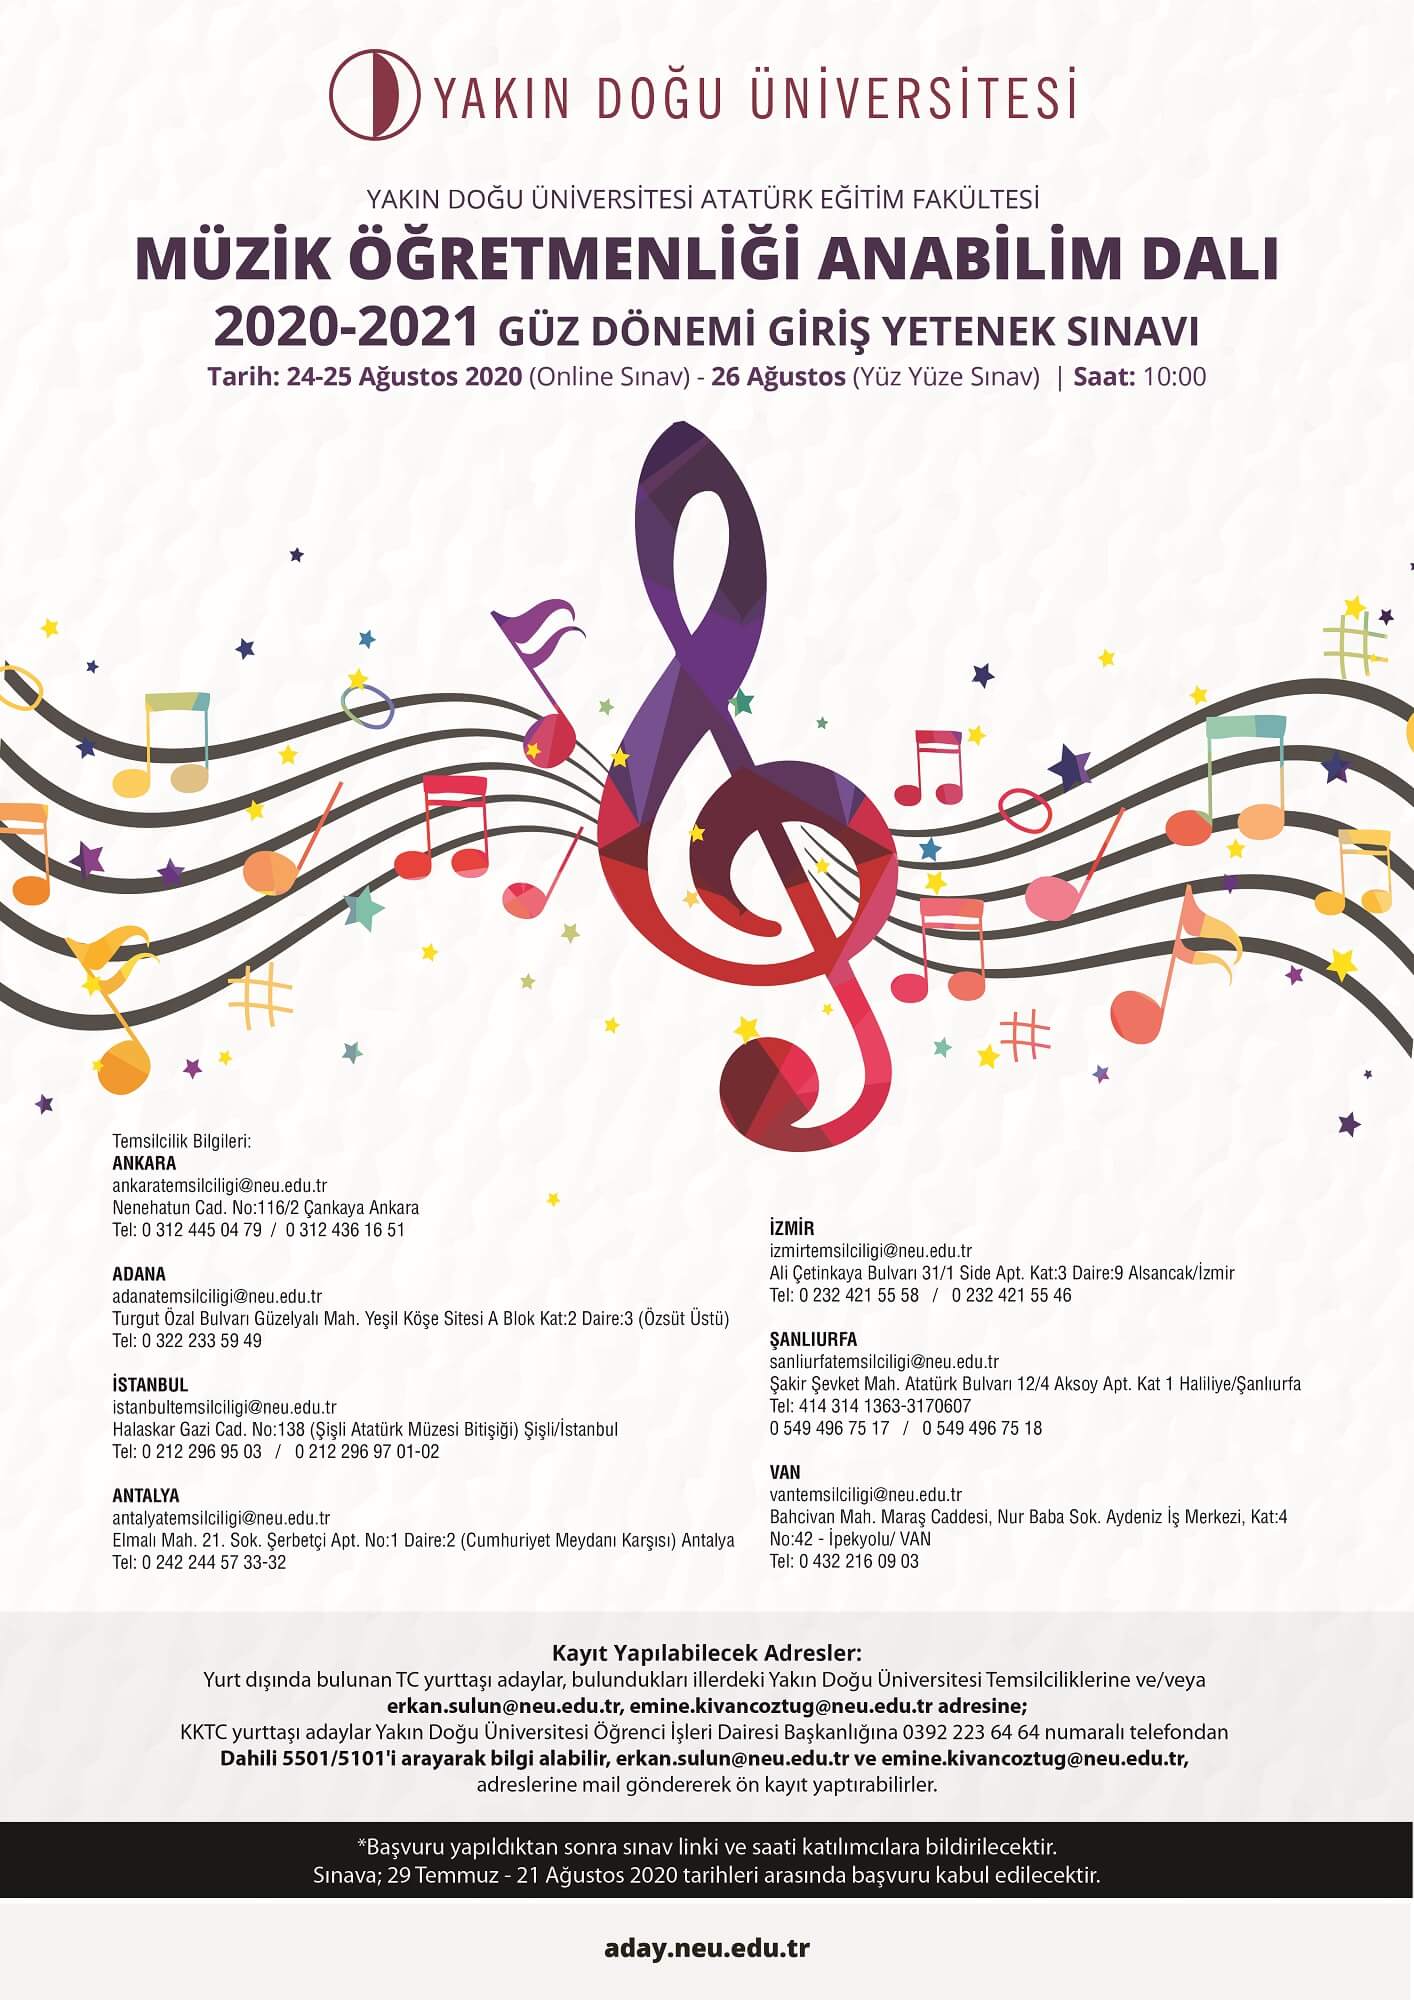 Yakın Doğu Üniversitesi Atatürk Eğitim Fakültesi Güzel Sanatlar Eğitimi Bölümü Müzik Öğretmenliği Ana Bilim Dalı 2020-2021 Öğretim Yılı için Lisans, Yüksek Lisans ve Doktora Başvuruları Sürüyor